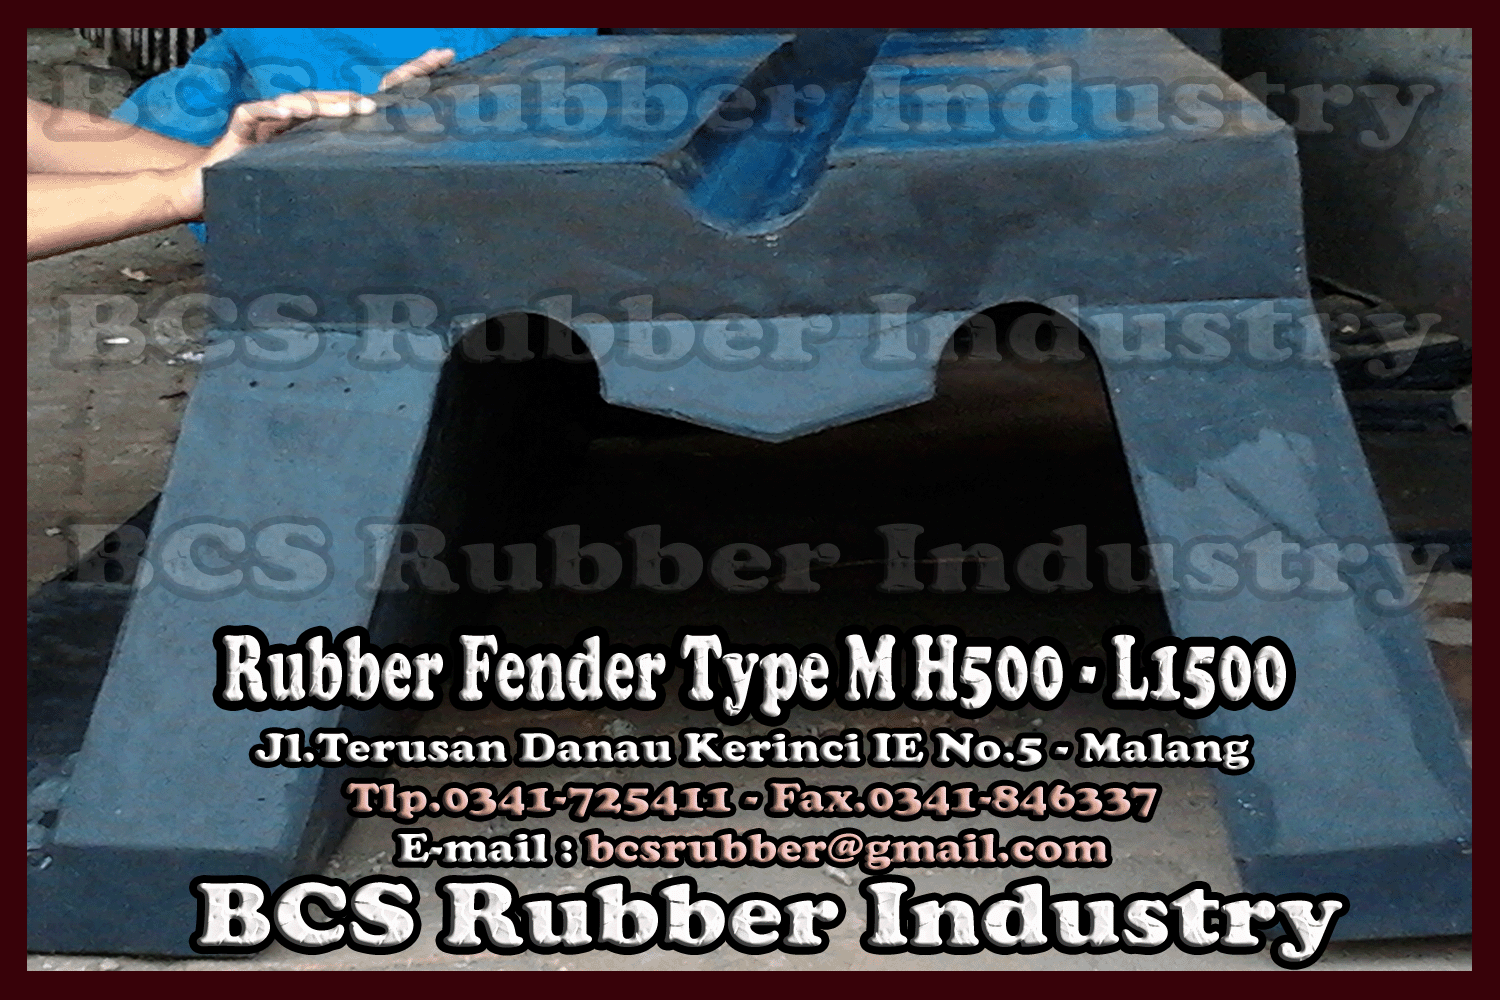 Rubber Fender,Rubber Fender Type M,Rubber Fender,BCS Rubber Fender